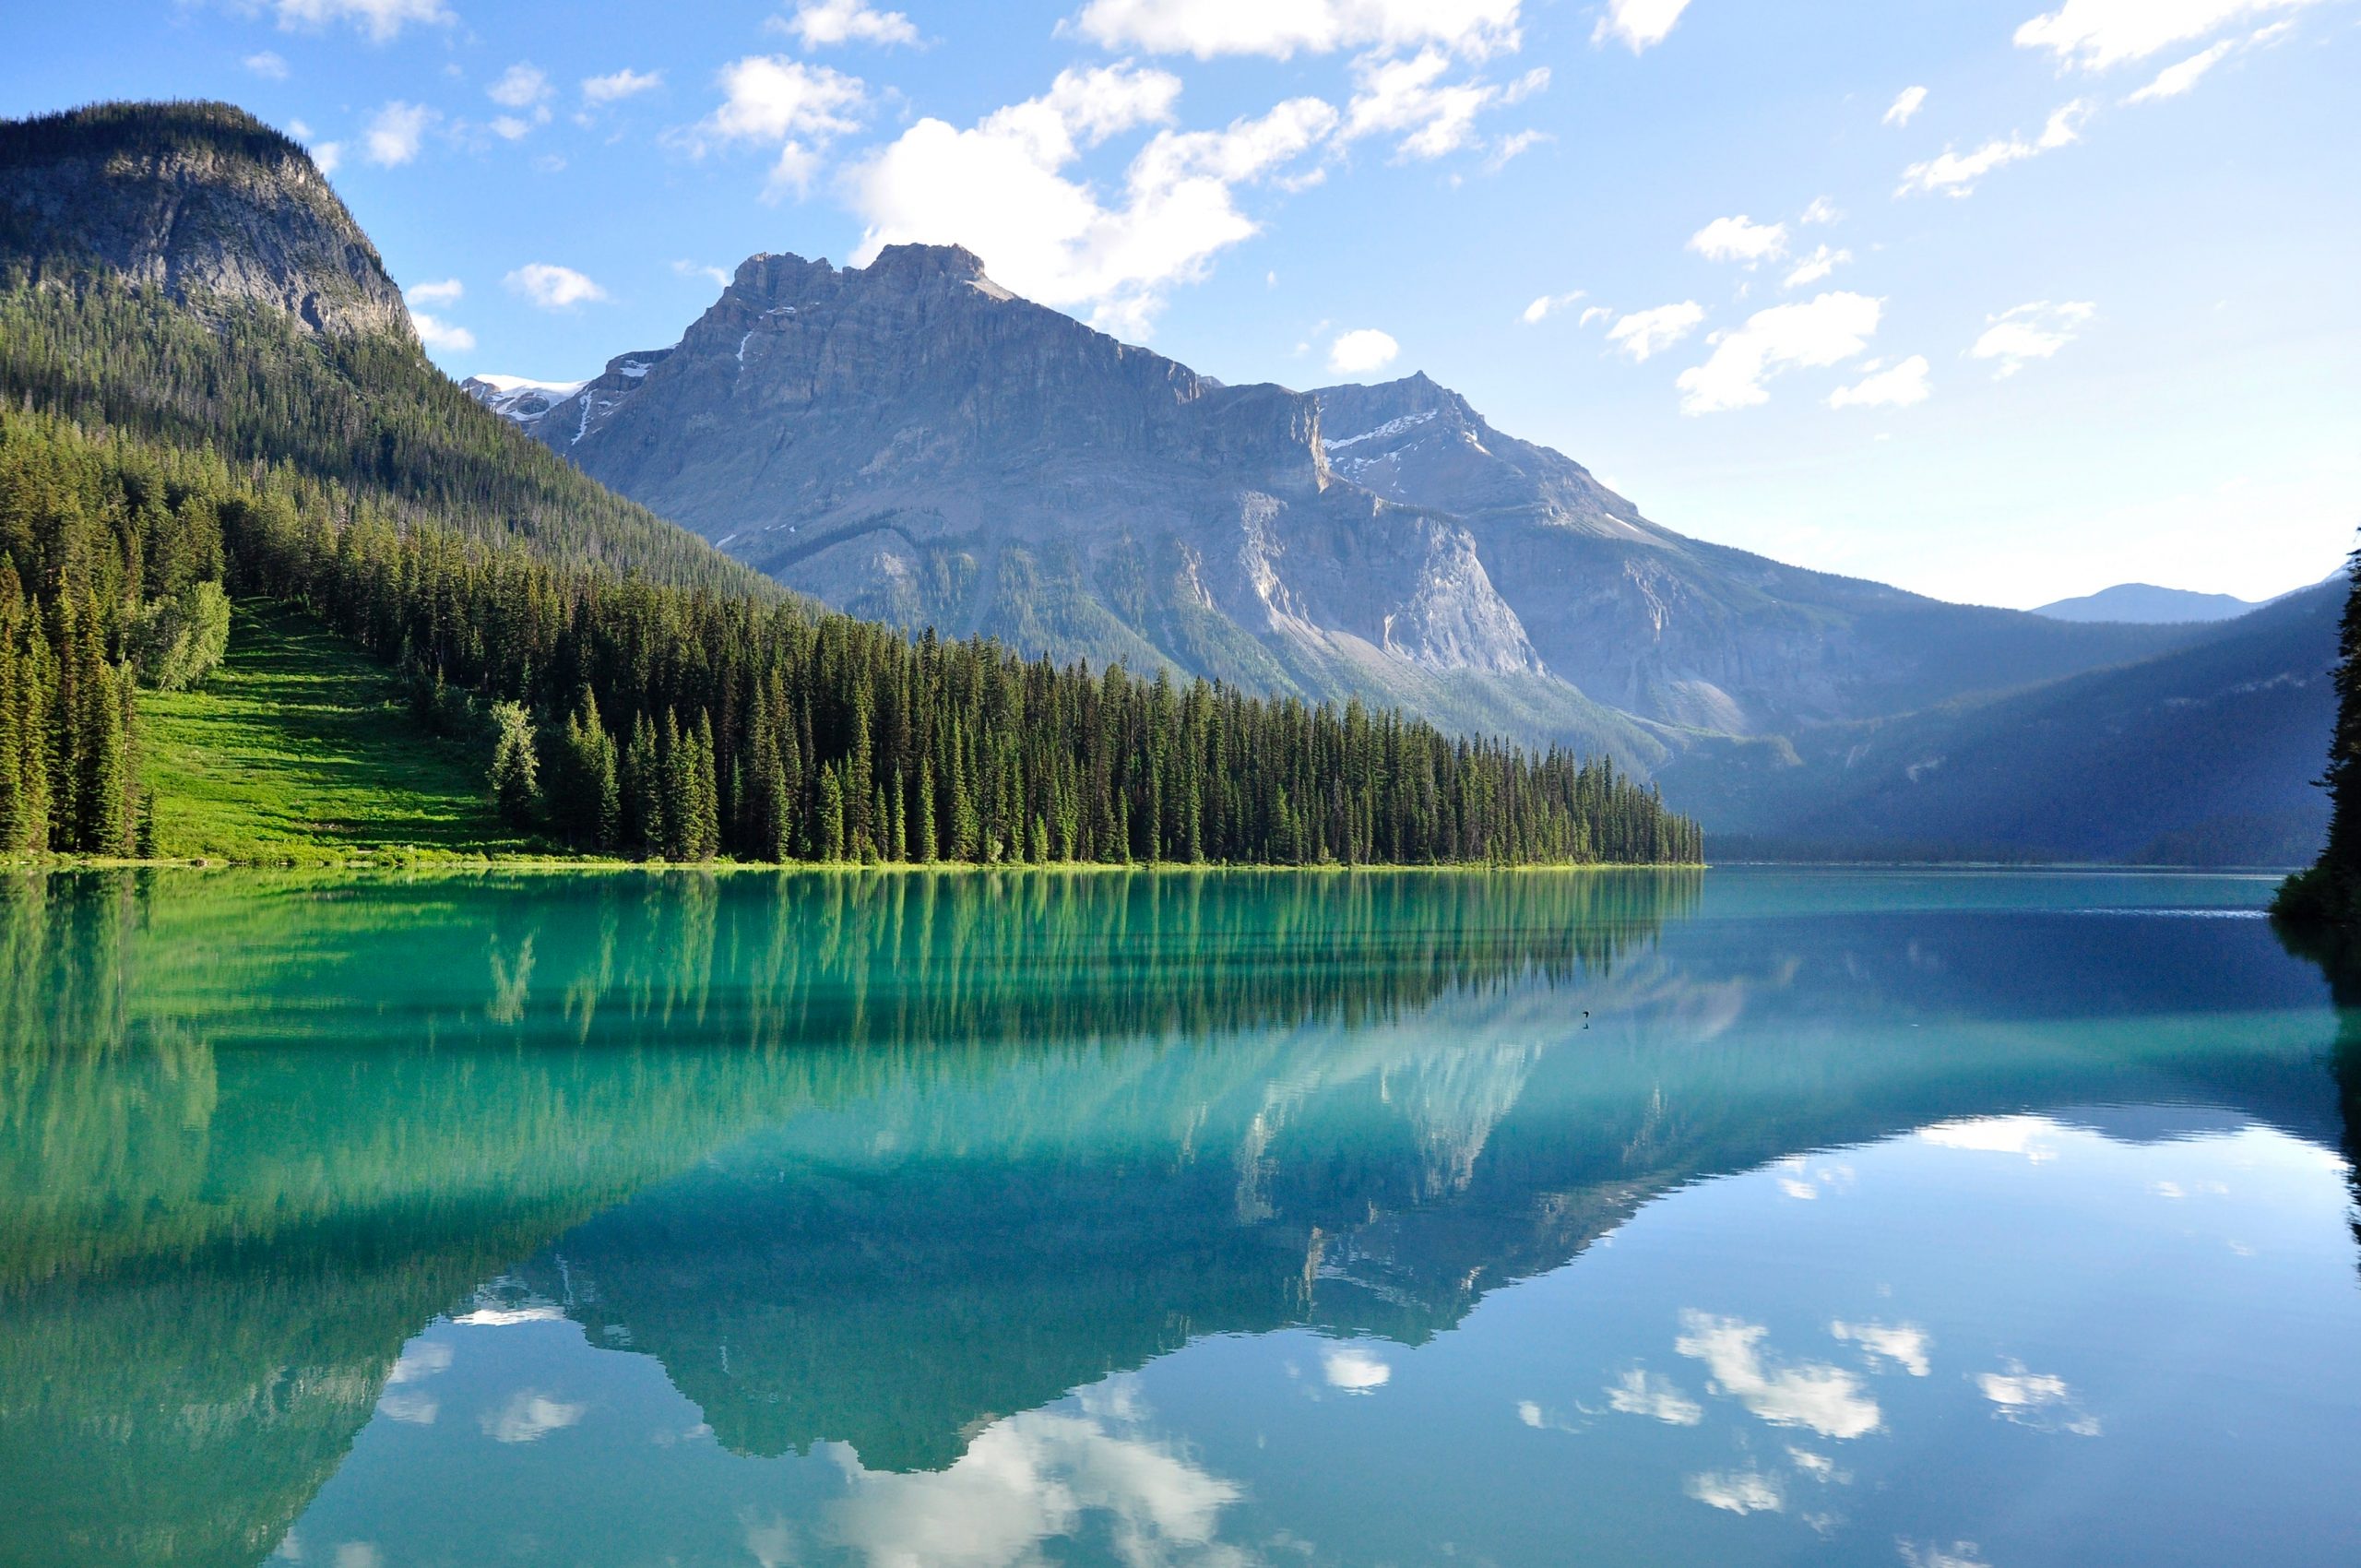 Photographie d'un lac calme et serein devant une montagne rocheuse déchiquetée. À gauche, la falaise rocheuse est recouverte d'une forêt de pins verte et dense. L'eau du lac est si calme qu'elle reflète clairement la montagne déchiquetée, le ciel bleu et les volutes de nuages blancs dans le ciel.